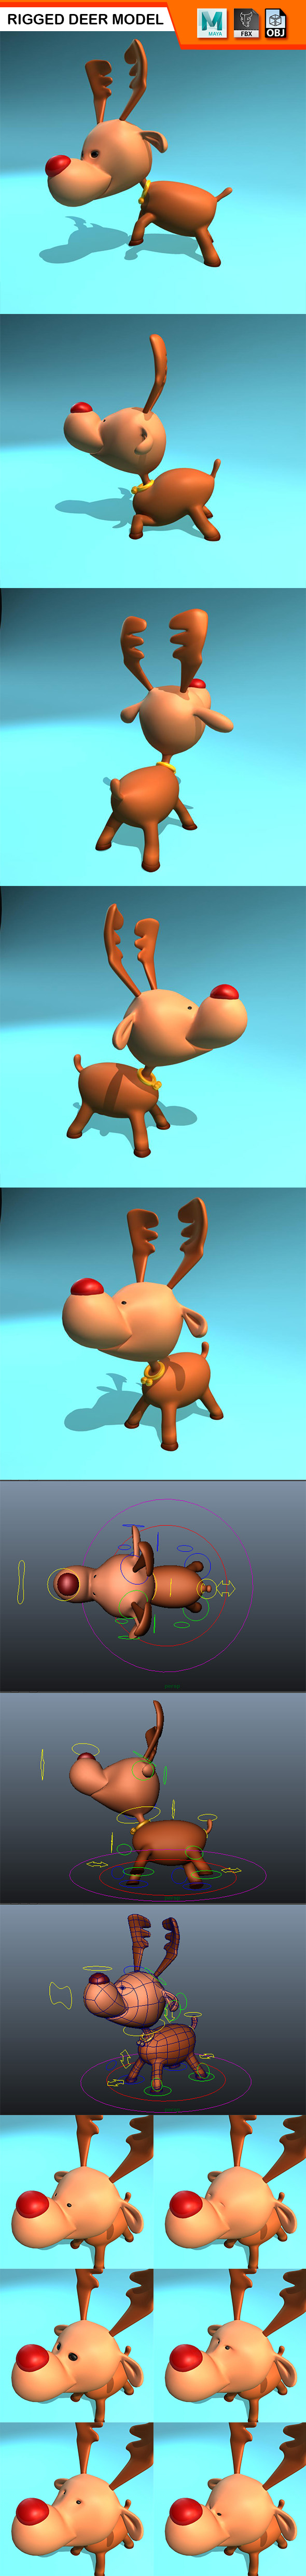 Rigged Deer Model - 3Docean 28406413